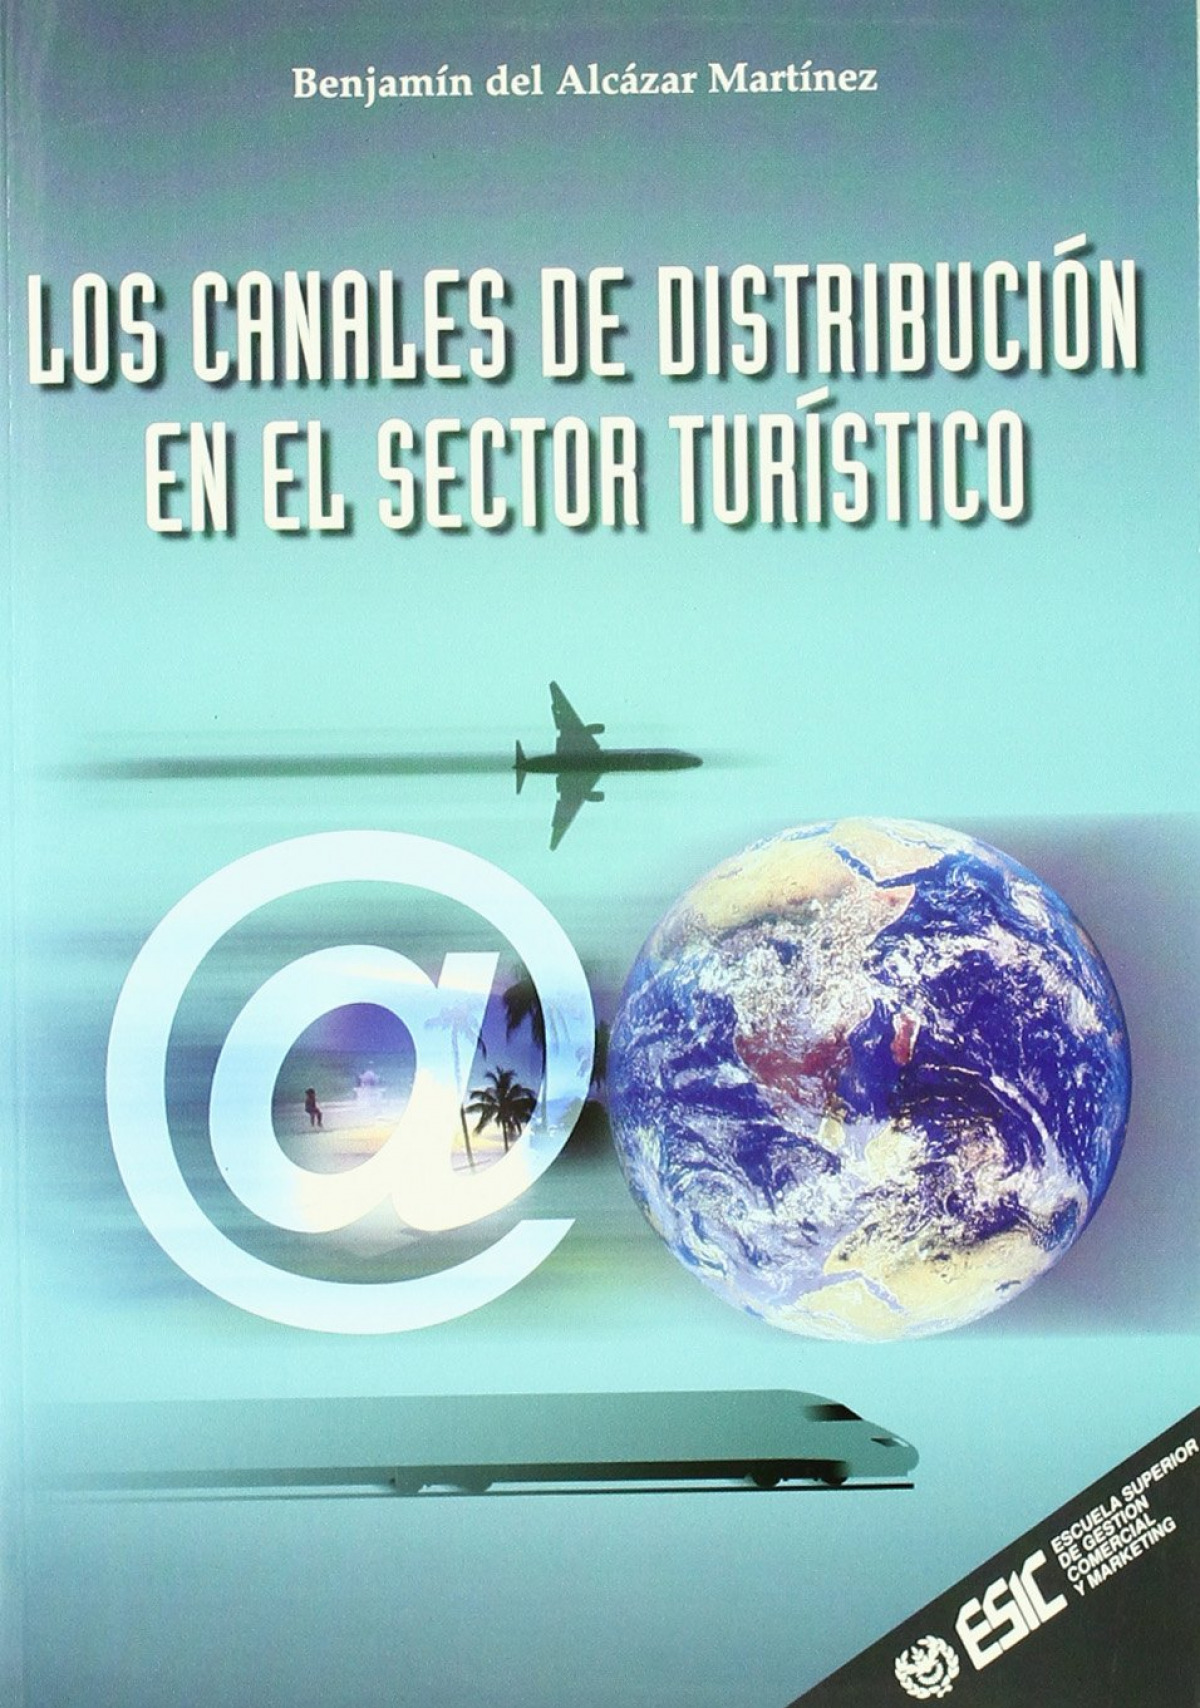 Los canales de distribución en el sector turístico - Alcazar Martínez, Benjamín del del